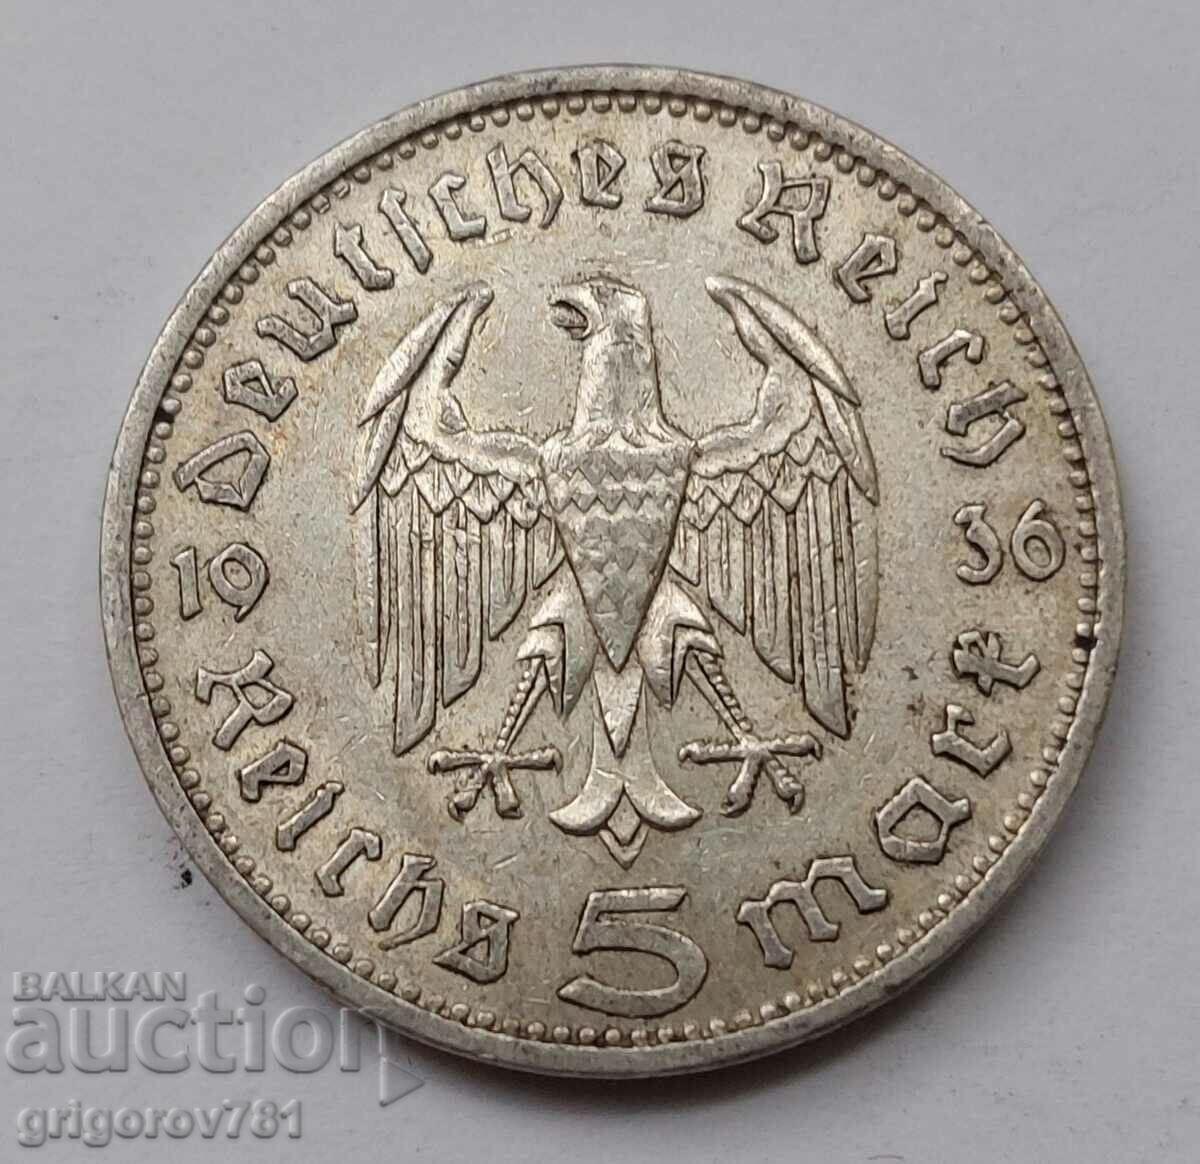 5 mărci de argint Germania 1936 A III Reich Moneda de argint #37